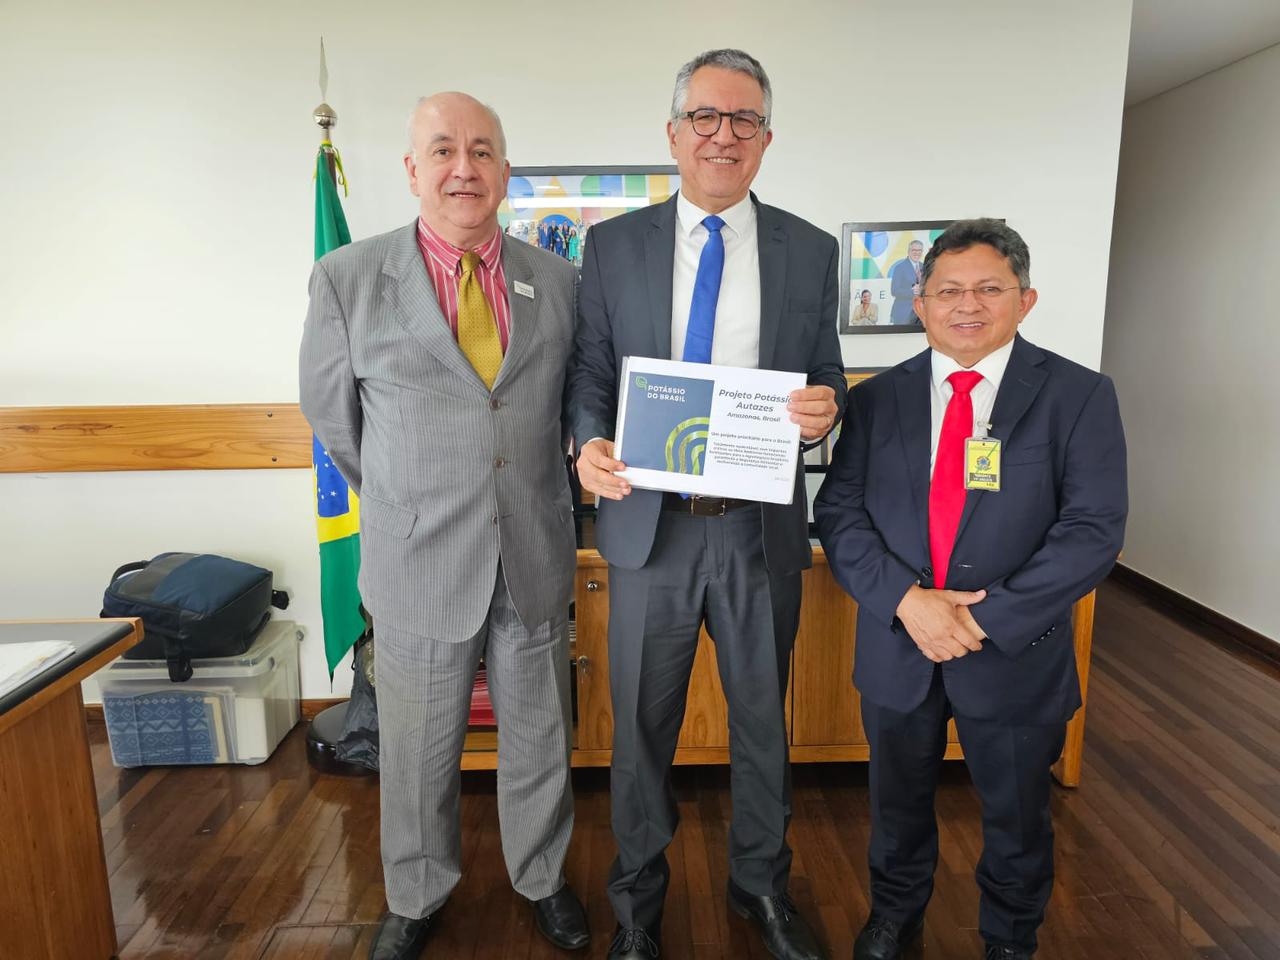 Presidente da Potássio do Brasil, Adriano Espeschit, ao lado do Ministro das Relações Institucionais, Alexandre Padilha e do Deputado Estadual, Sinésio Campos, em Brasília.